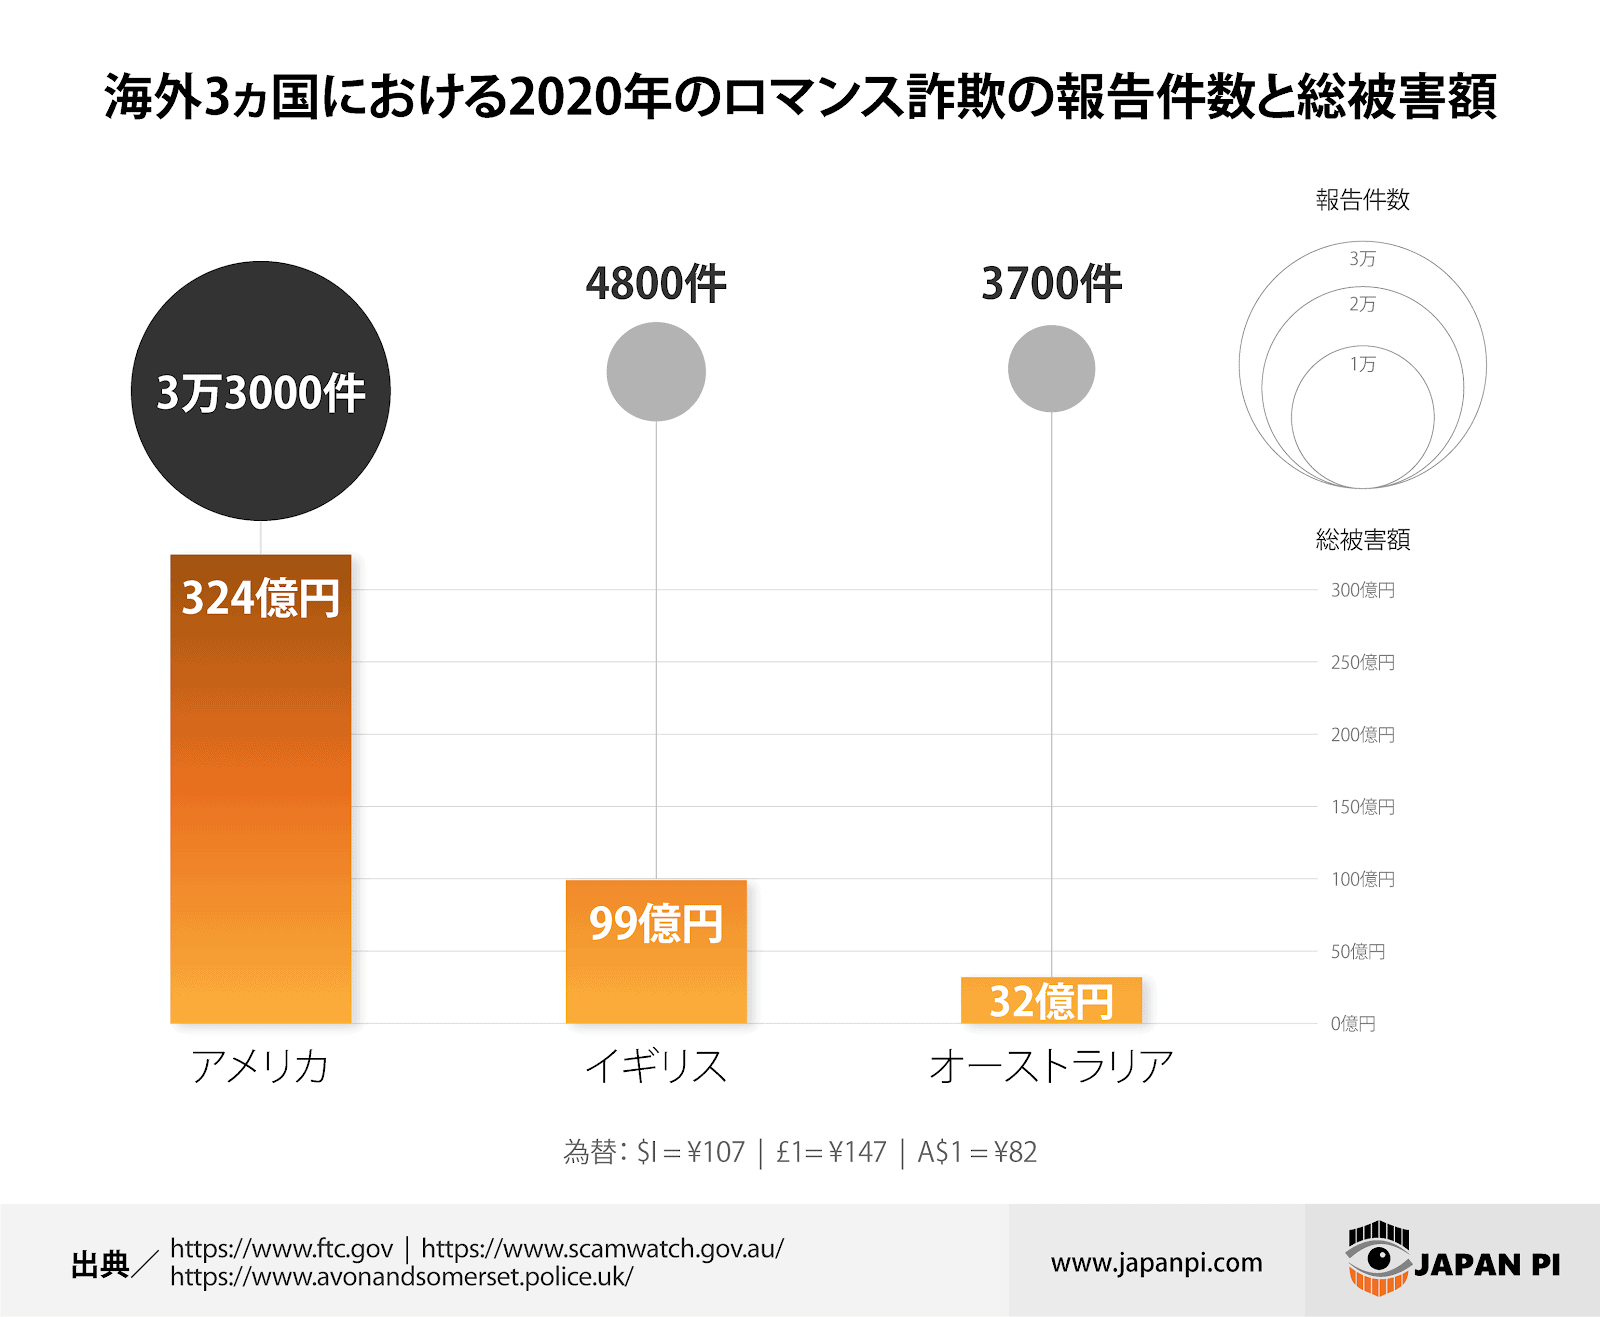 数字で見るロマンス詐欺の実態 世界と日本で急増中の理由 Japan Pi